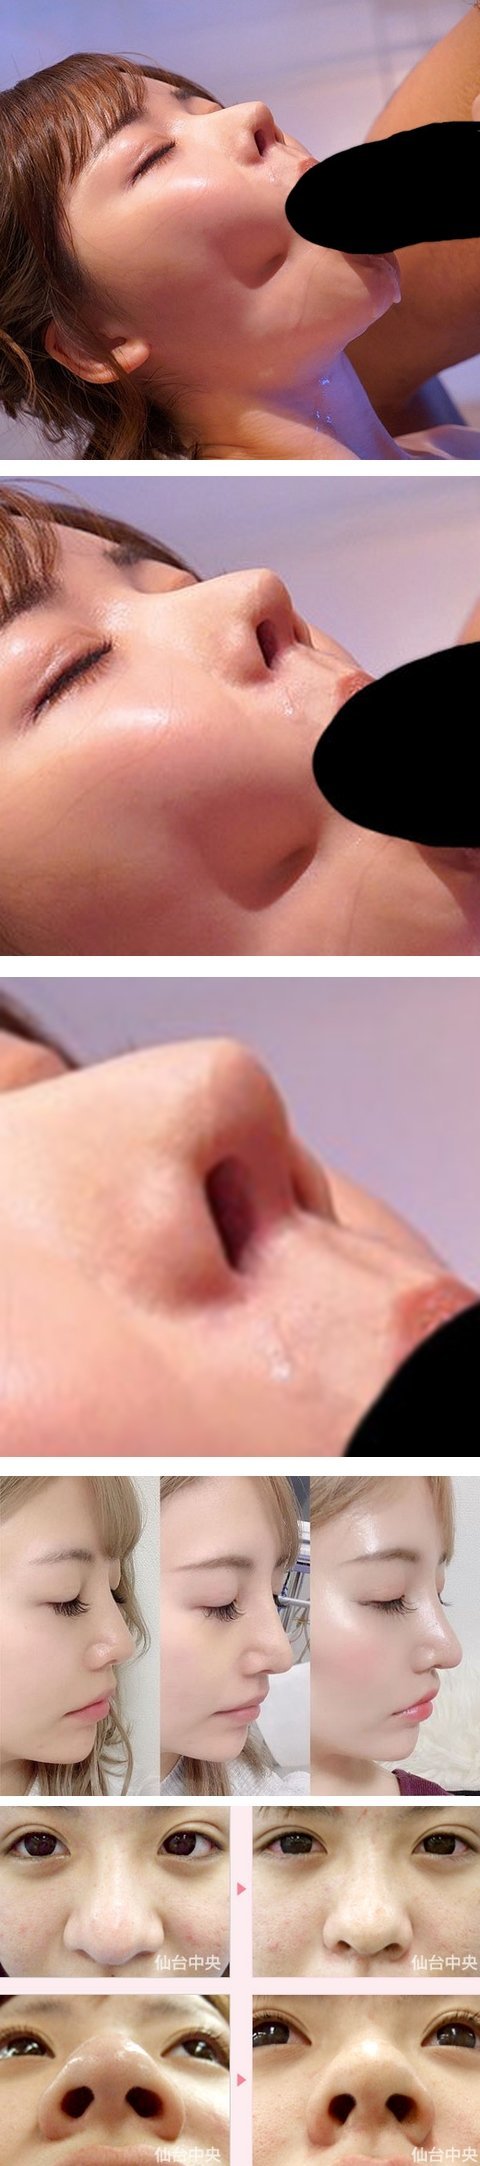 鼻が整形の女性5マイ連続画像